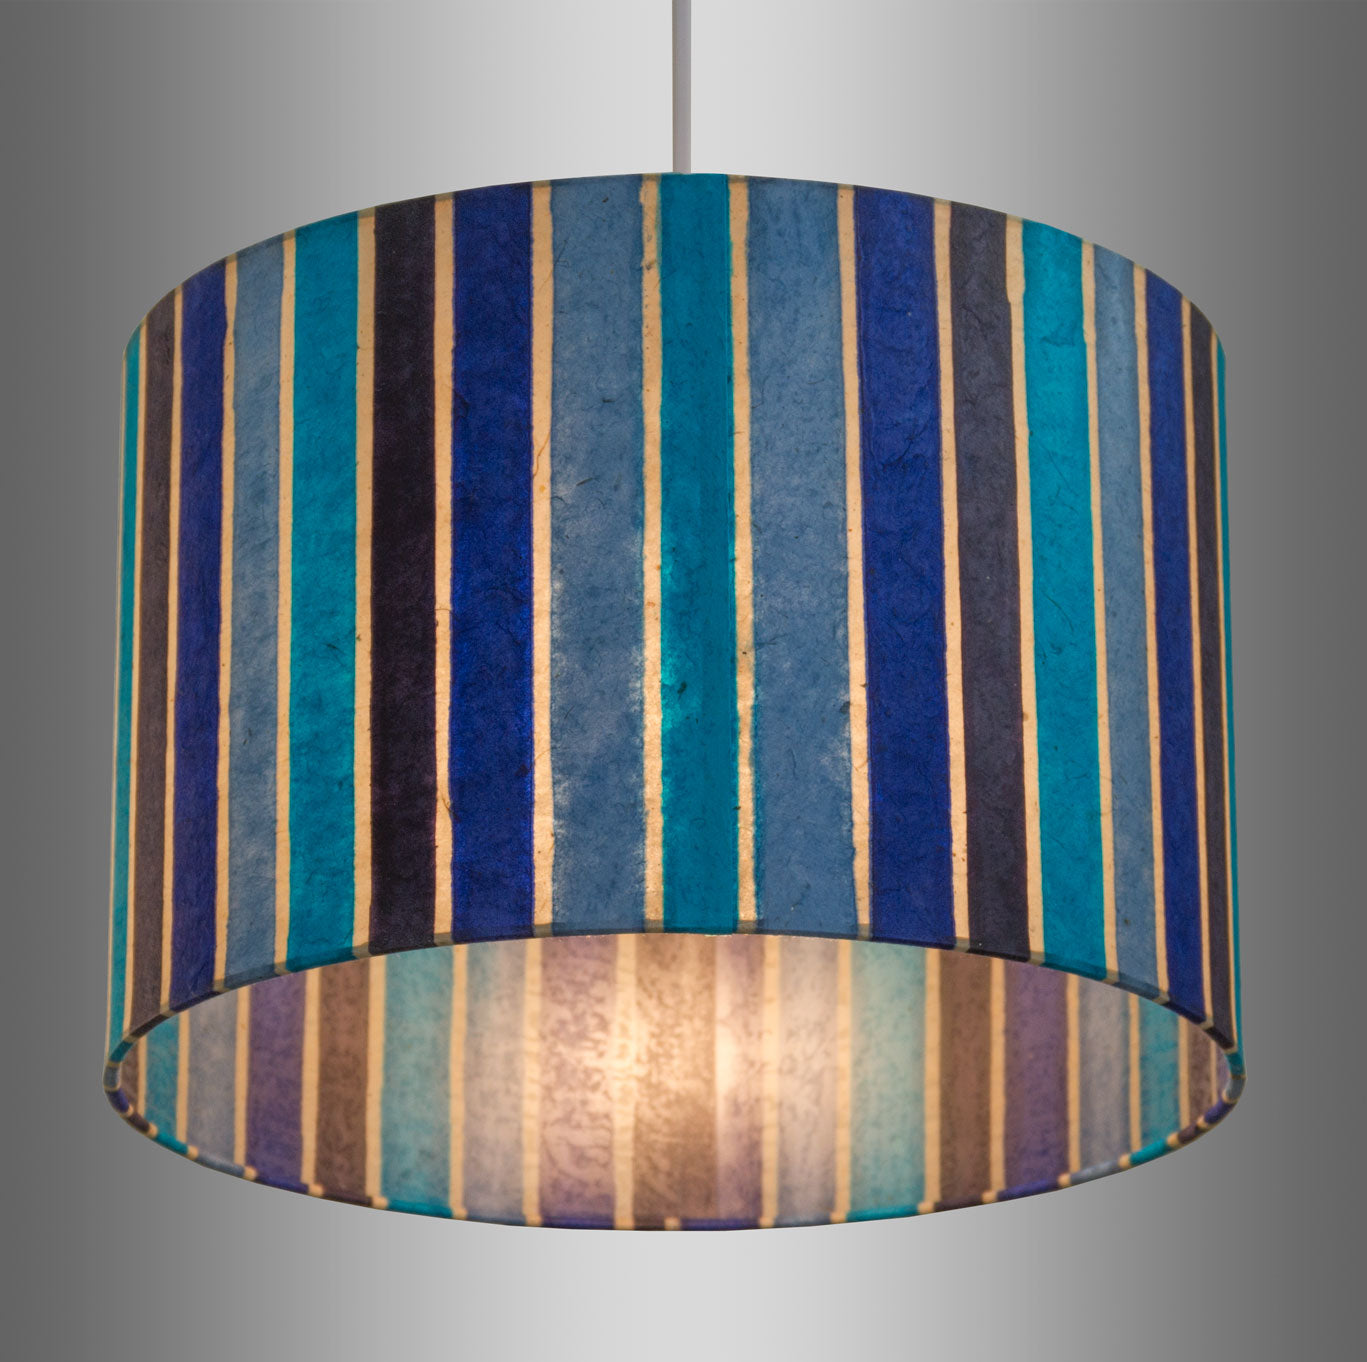 Drum Lamp Shade - P05 - Batik Stripes Blue, 60cm(d) x 30cm(h)